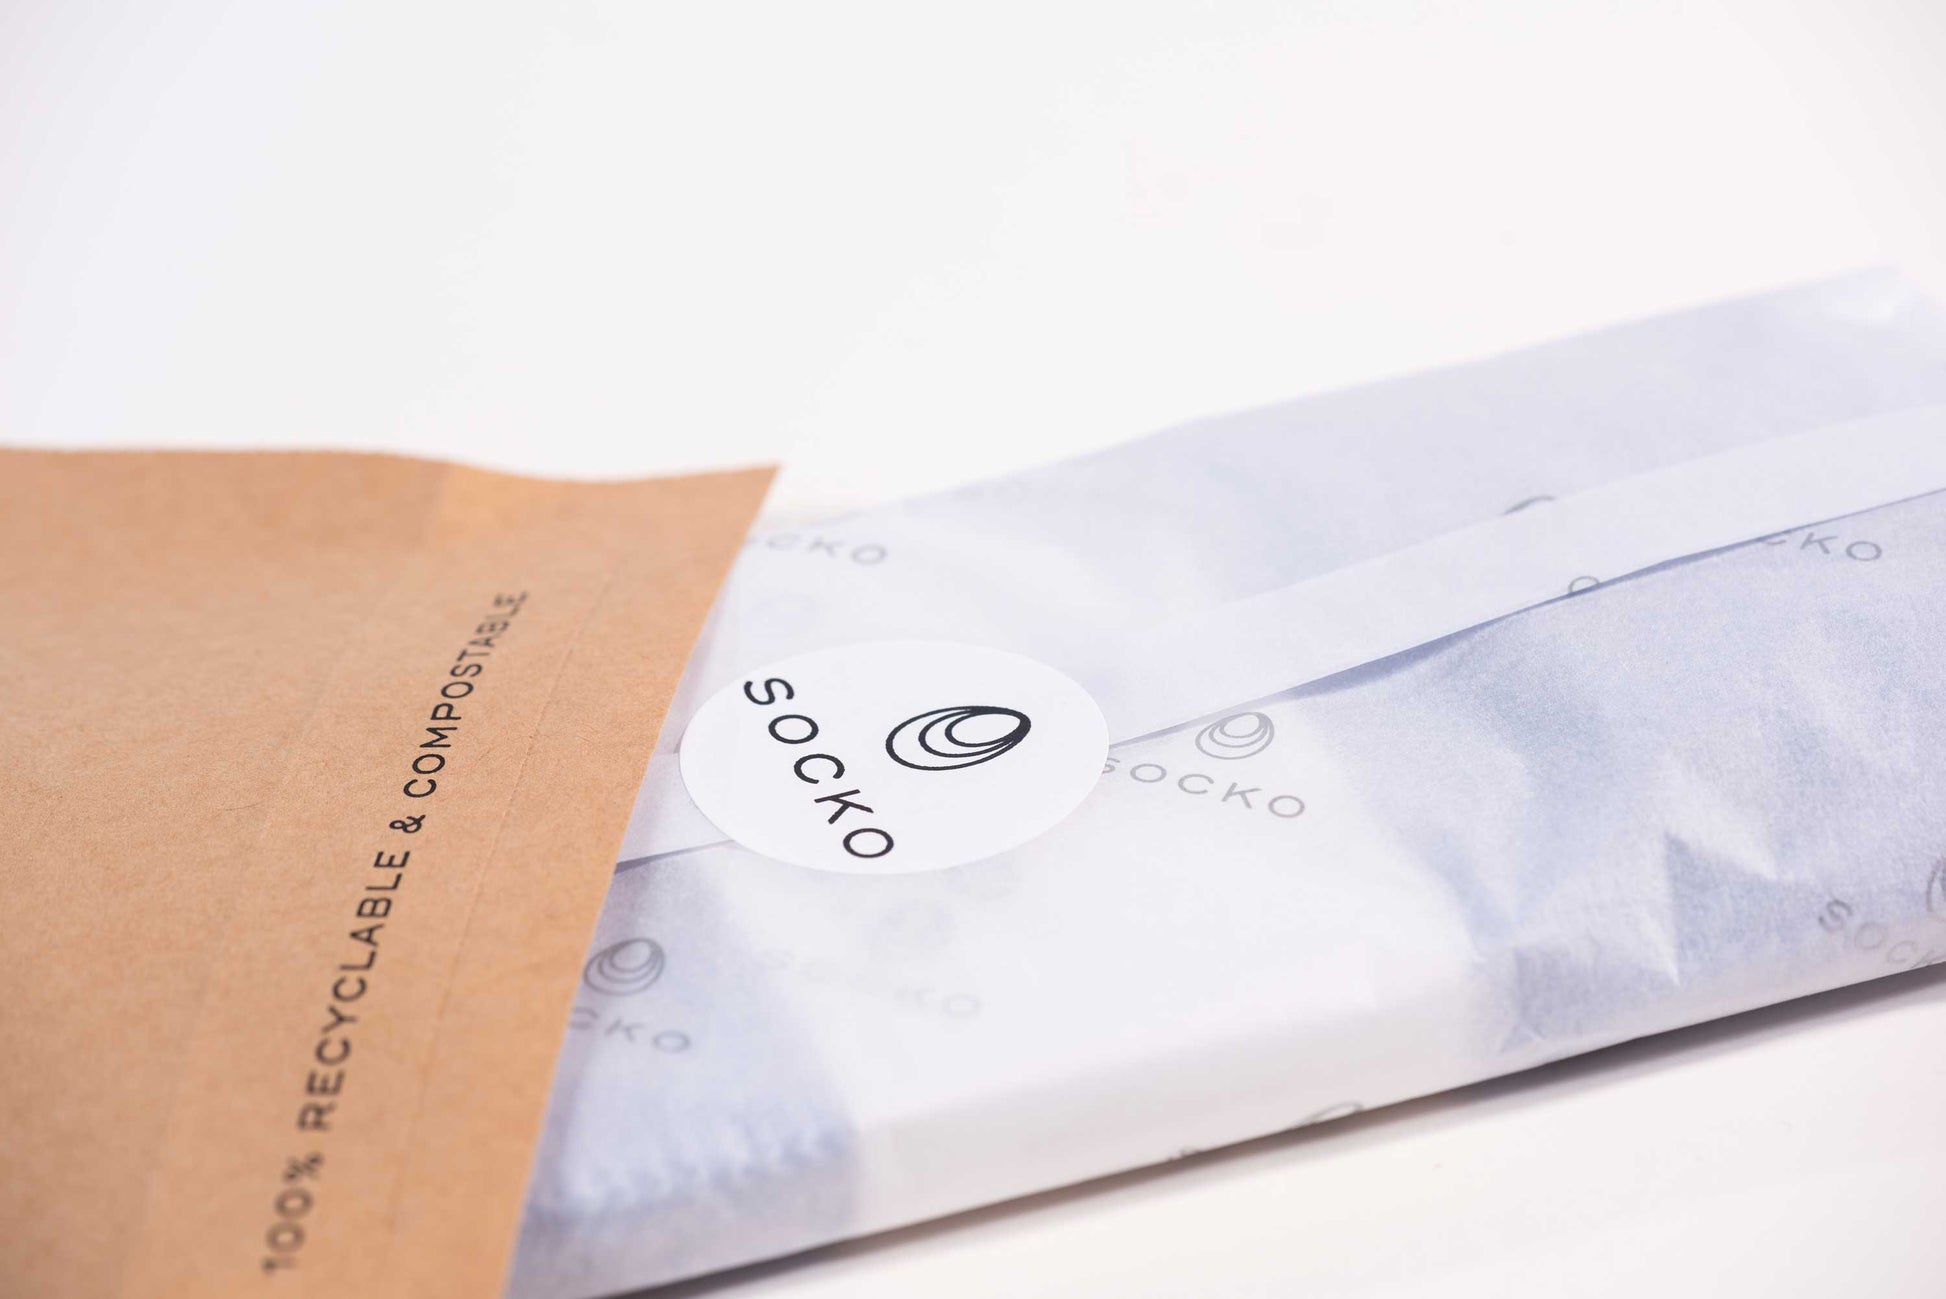 Single pair of Socko socks wrapped in plastic free packaging